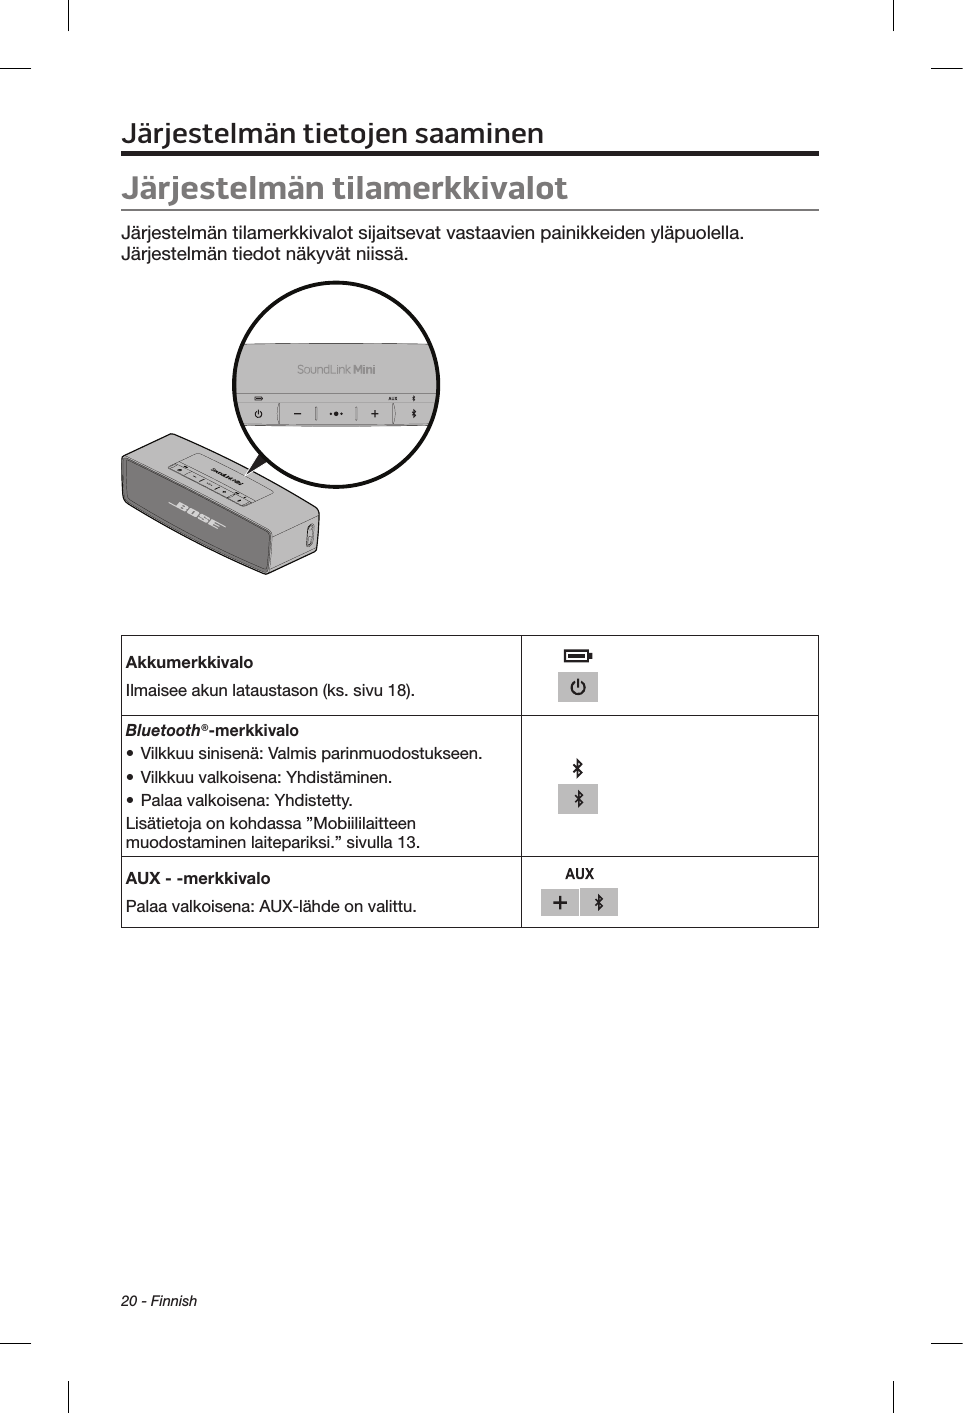 20 - FinnishJärjestelmän tietojen saaminenJärjestelmän tilamerkkivalotJärjestelmän tilamerkkivalot sijaitsevat vastaavien painikkeiden yläpuolella. Järjestelmän tiedot näkyvät niissä.AkkumerkkivaloIlmaisee akun lataustason (ks. sivu 18).Bluetooth®-merkkivalo• Vilkkuu sinisenä: Valmis parinmuodostukseen.• Vilkkuu valkoisena: Yhdistäminen.• Palaa valkoisena: Yhdistetty.Lisätietoja on kohdassa ”Mobiililaitteen muodostaminen laitepariksi.” sivulla 13.AUX - -merkkivaloPalaa valkoisena: AUX-lähde on valittu.